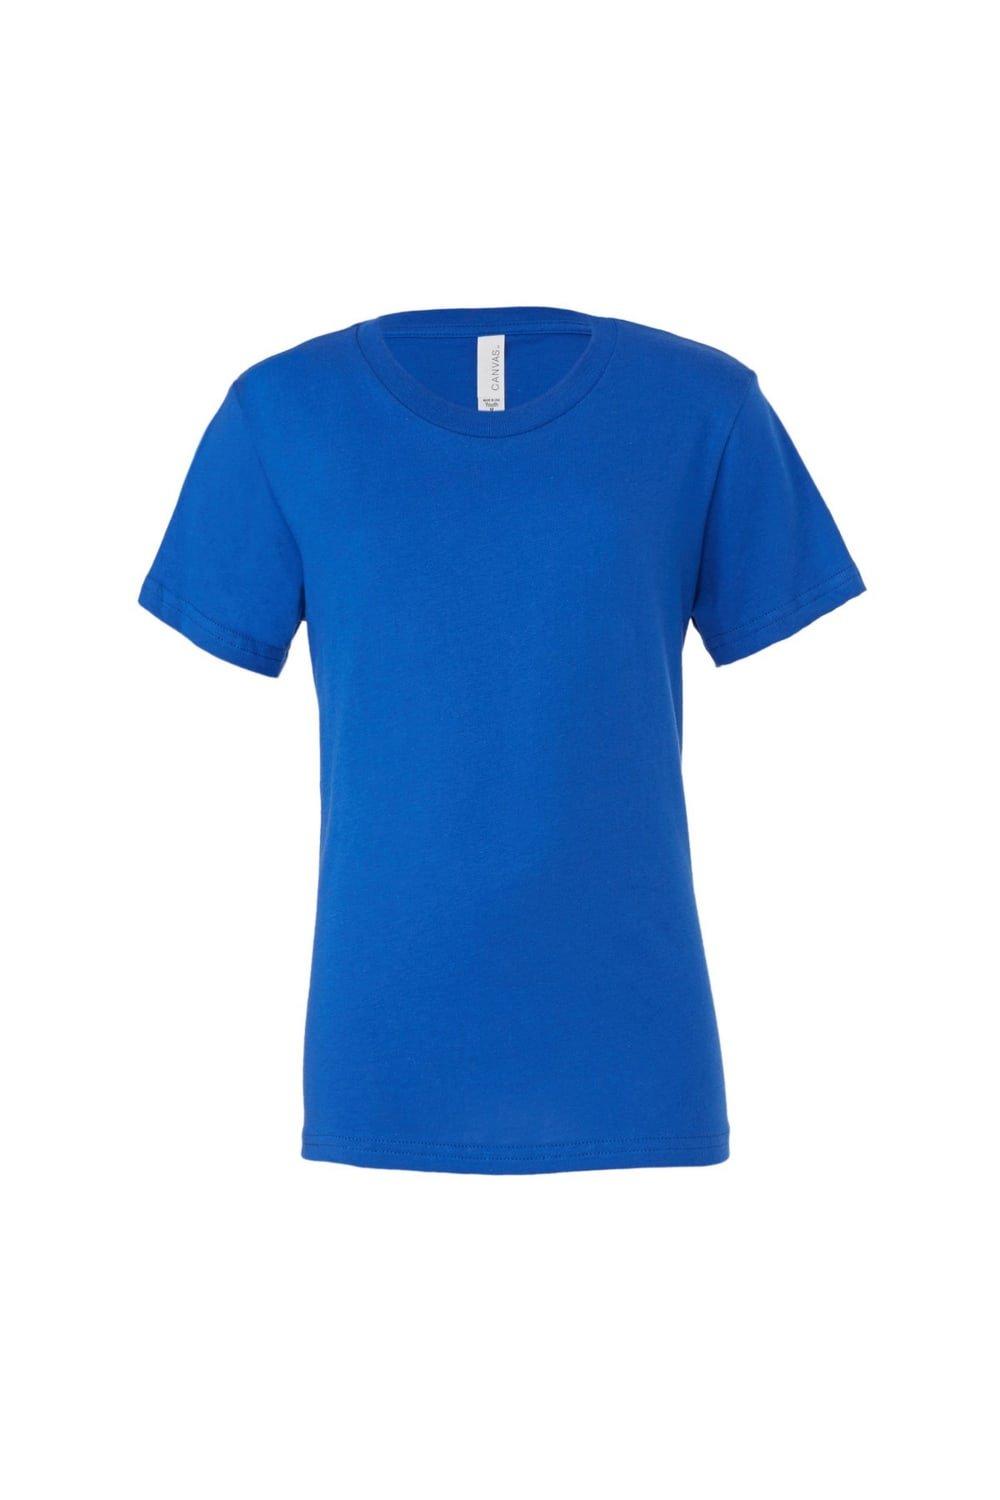 Молодежная футболка из джерси с короткими рукавами Bella + Canvas, синий молодежная футболка из джерси с короткими рукавами bella canvas синий